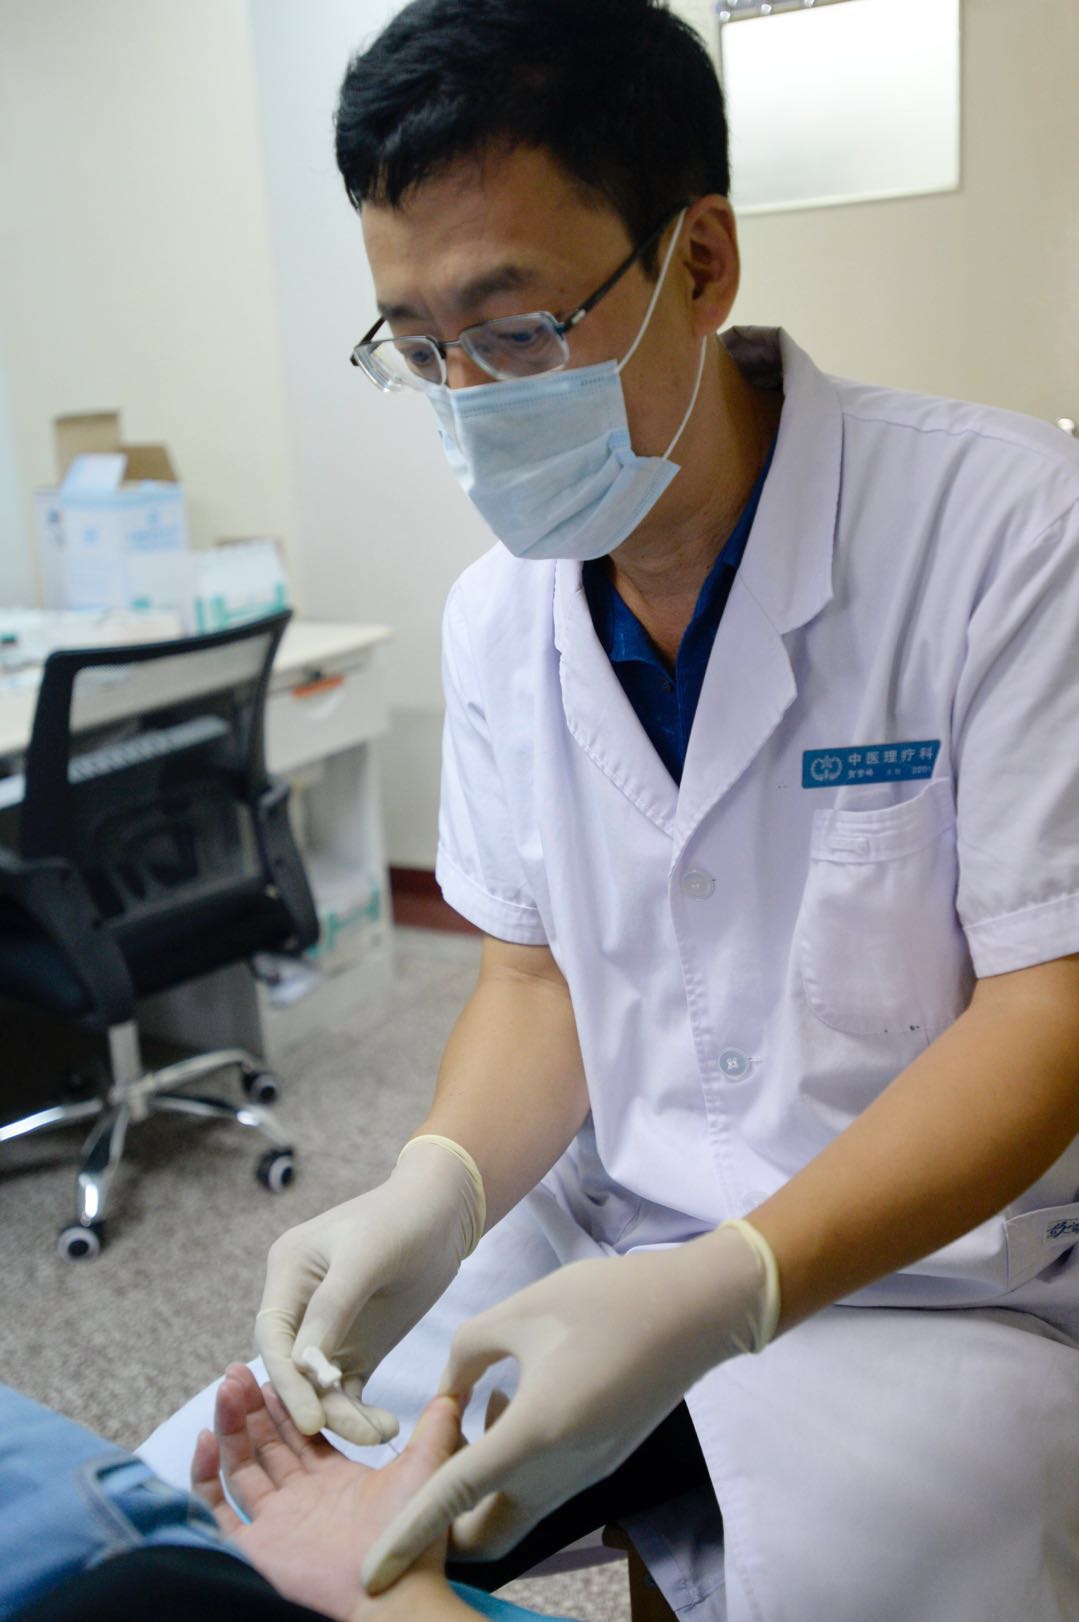 贺登峰医生在为患者进行手部疾病的针刀治疗。